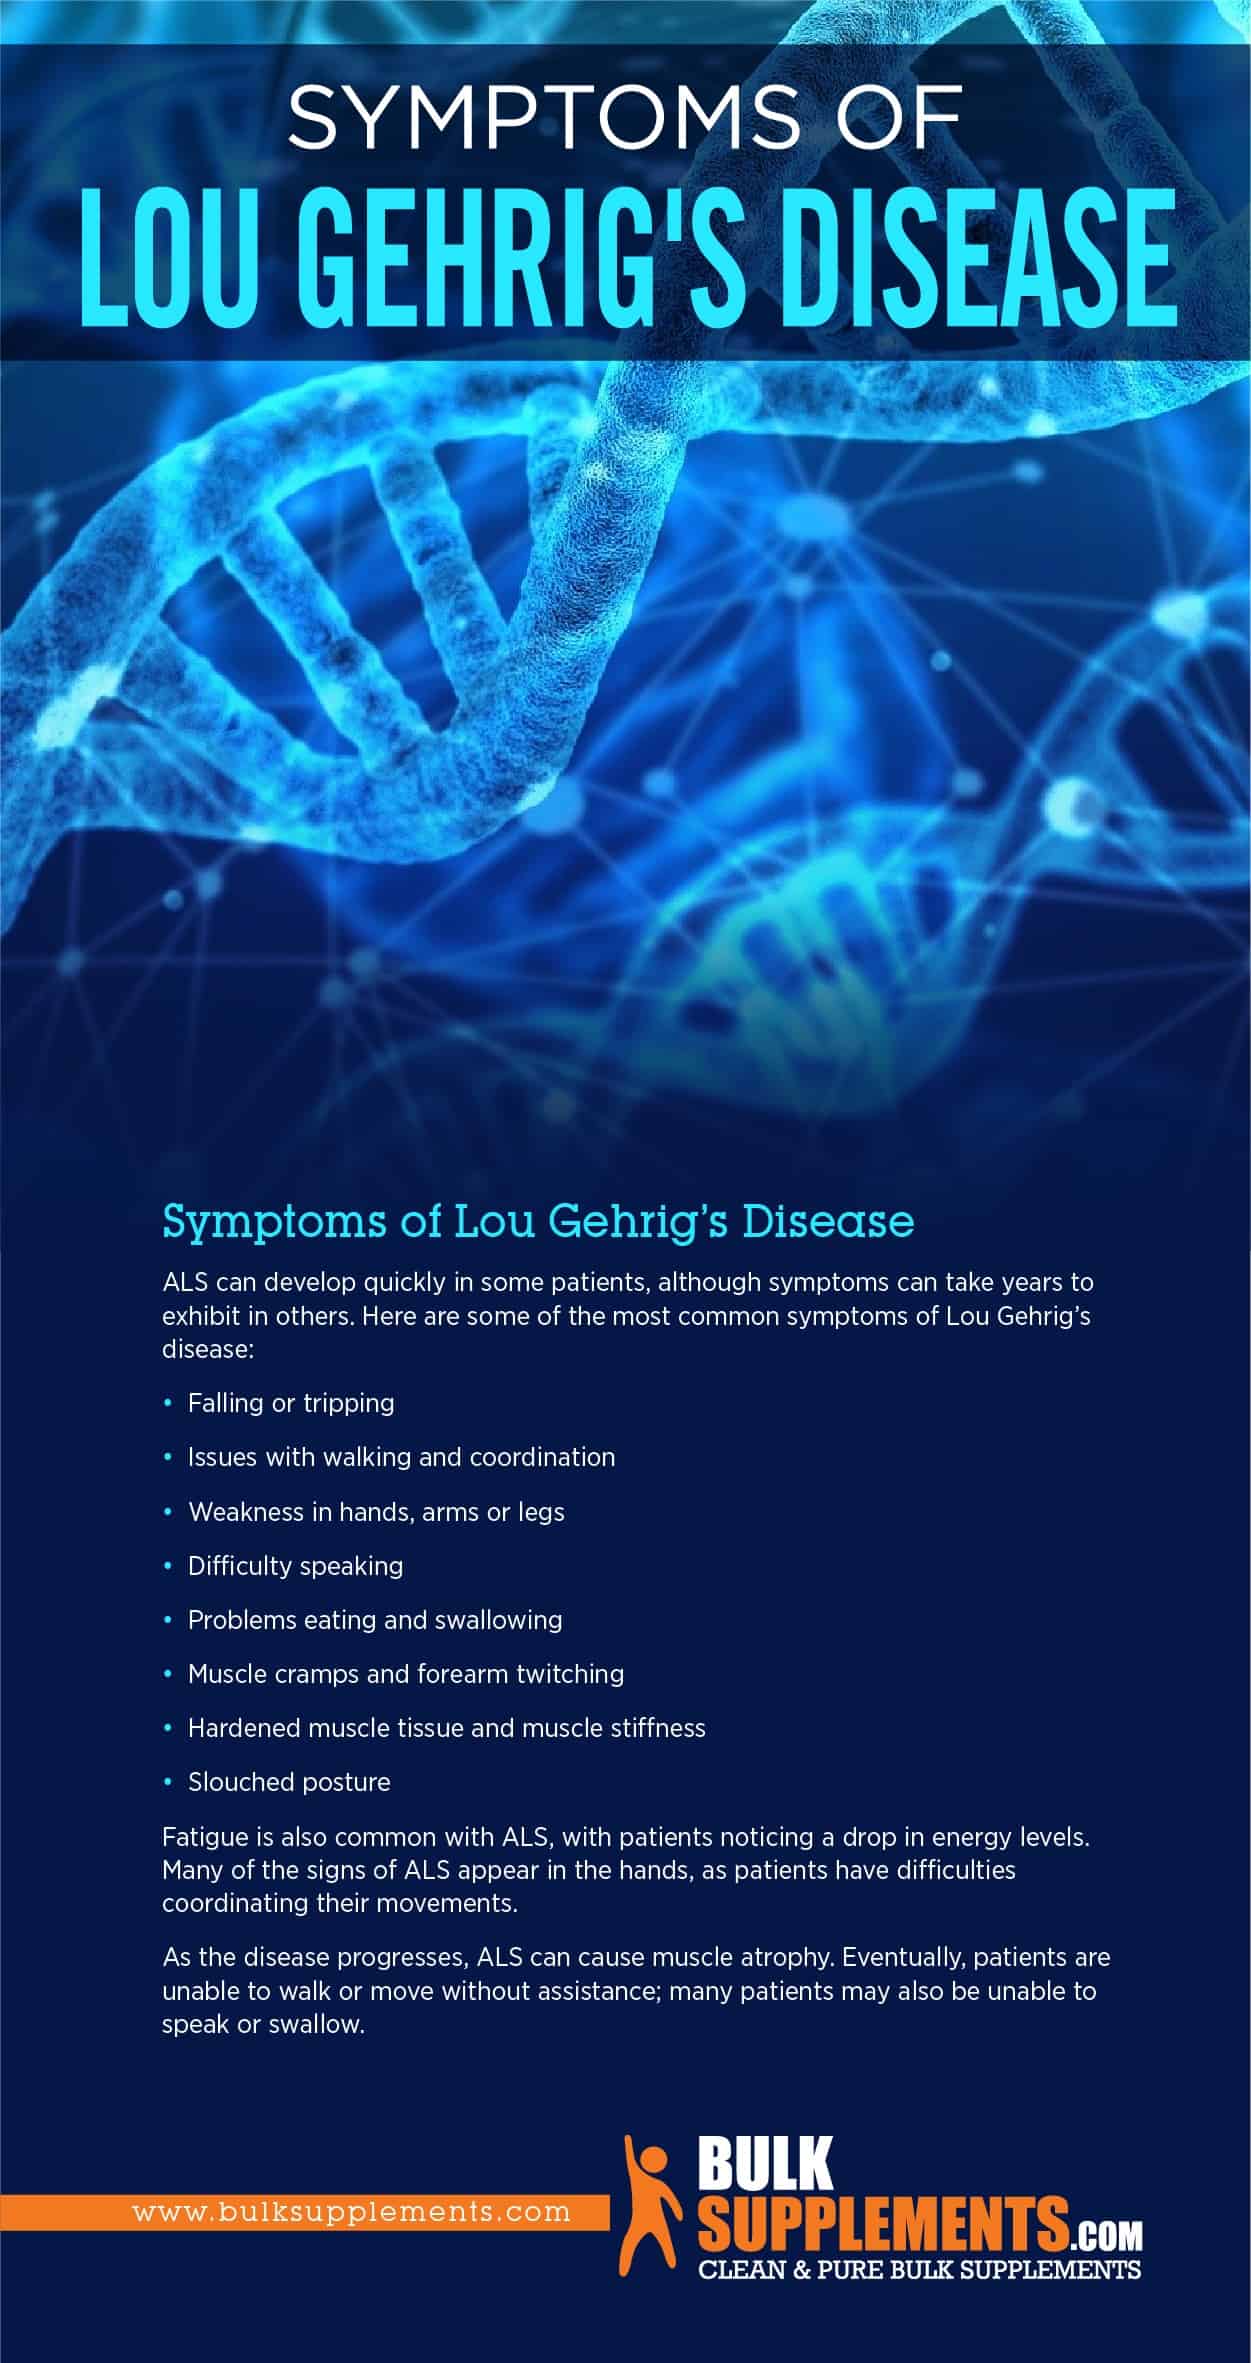 Symptoms of Lou Gehrig's Disease